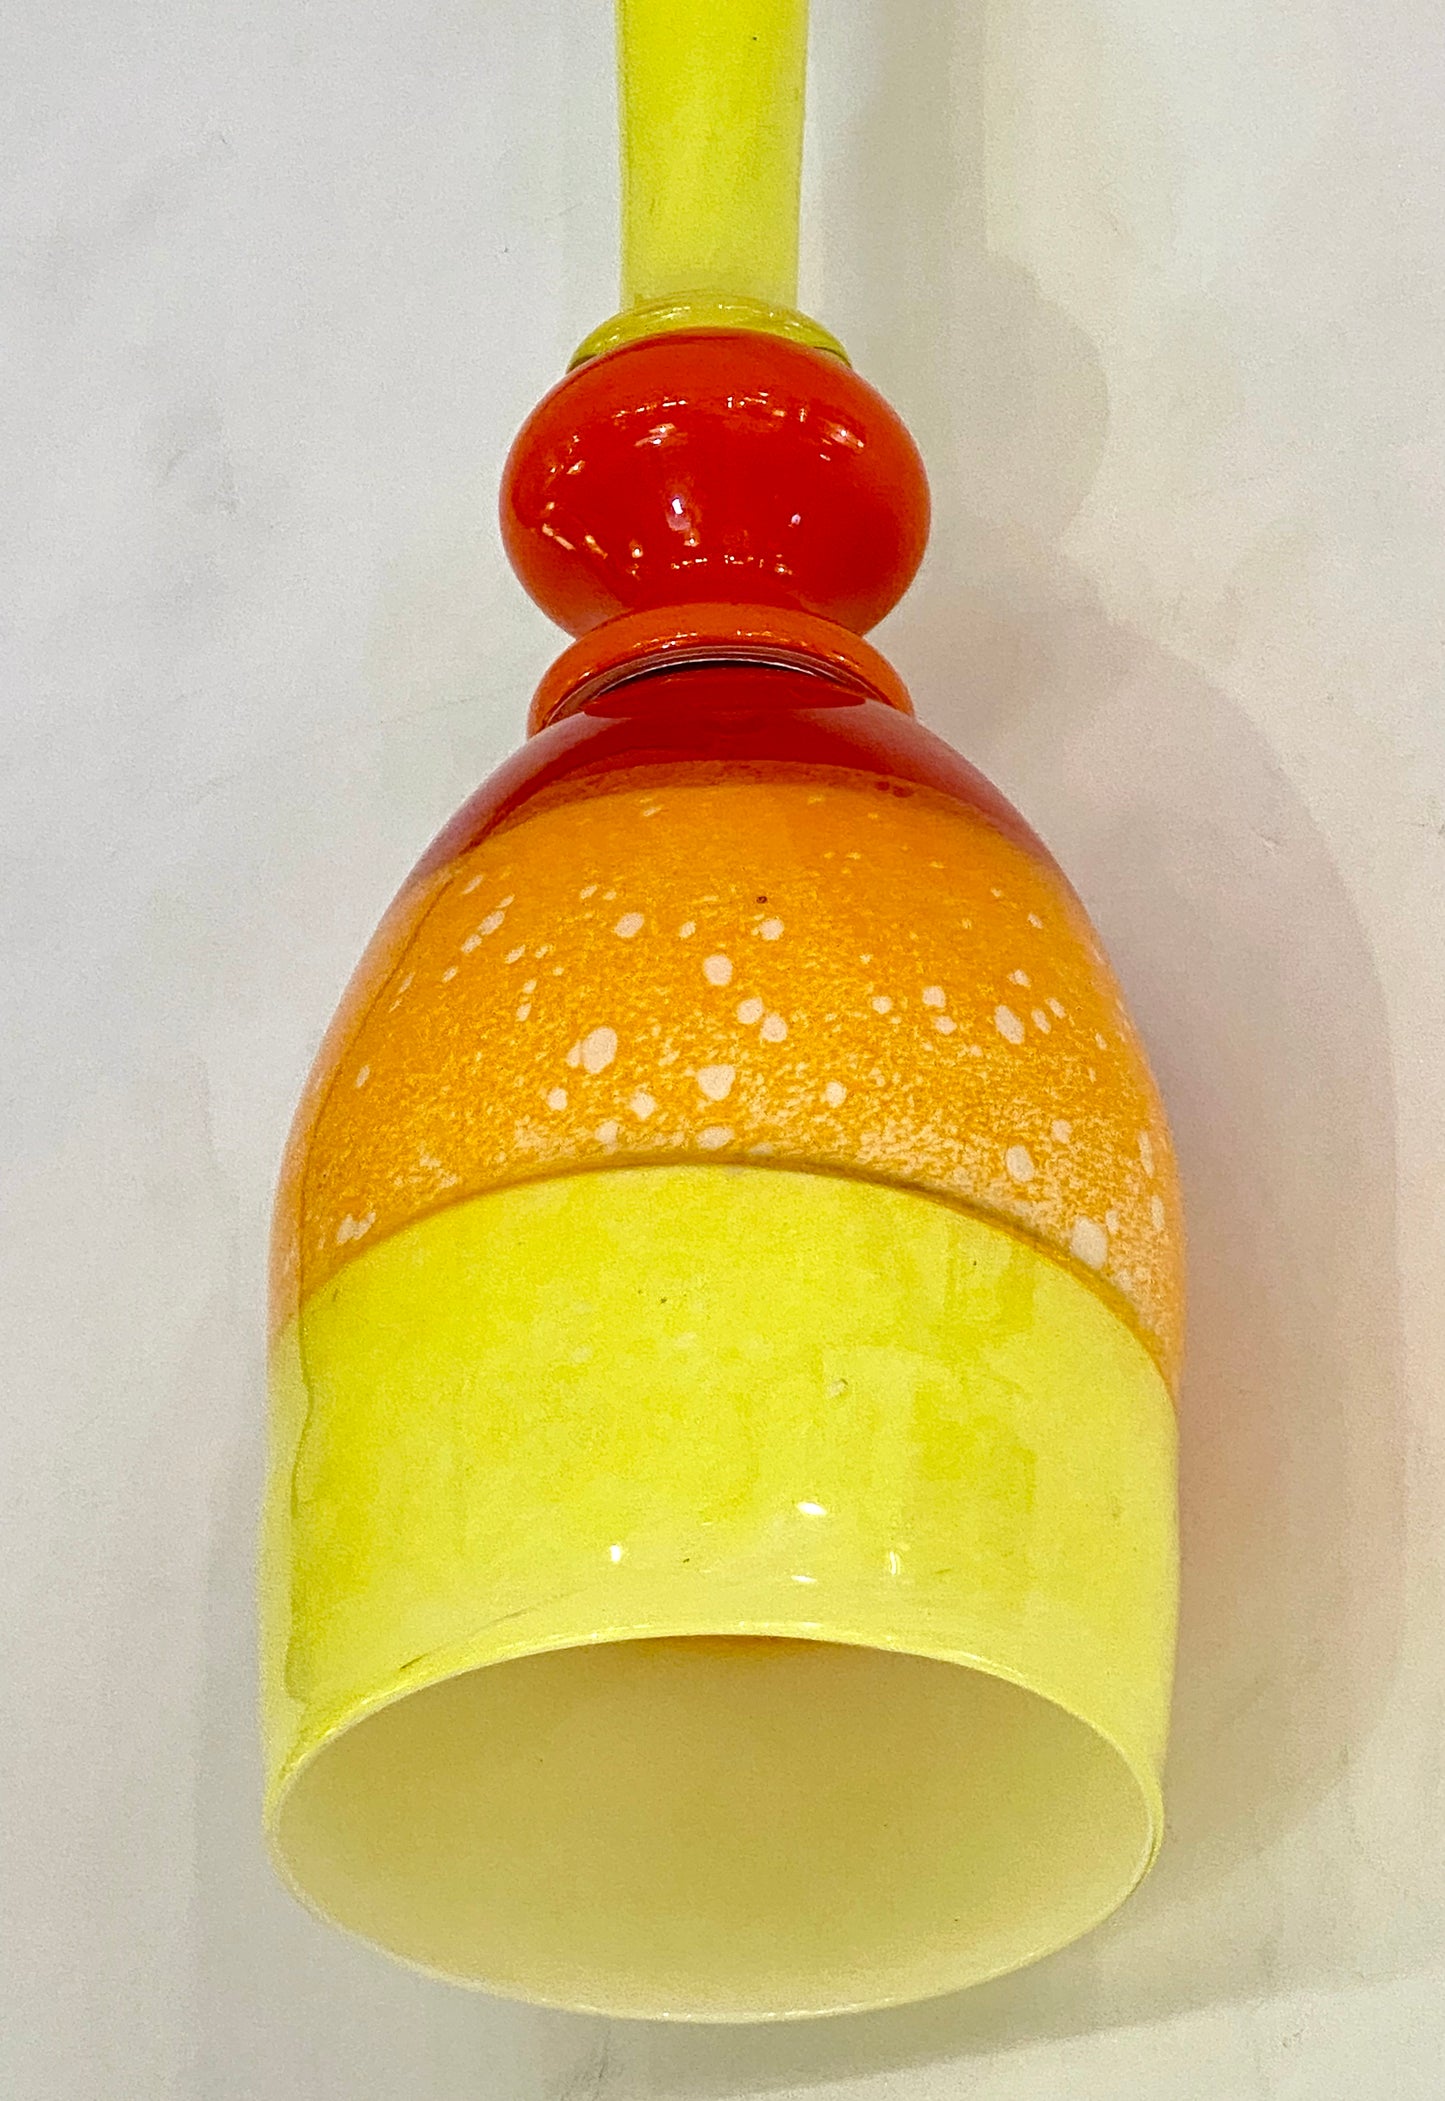 Contemporary Bespoke Italian Organic Yellow Orange Murano Glass Pendant Light